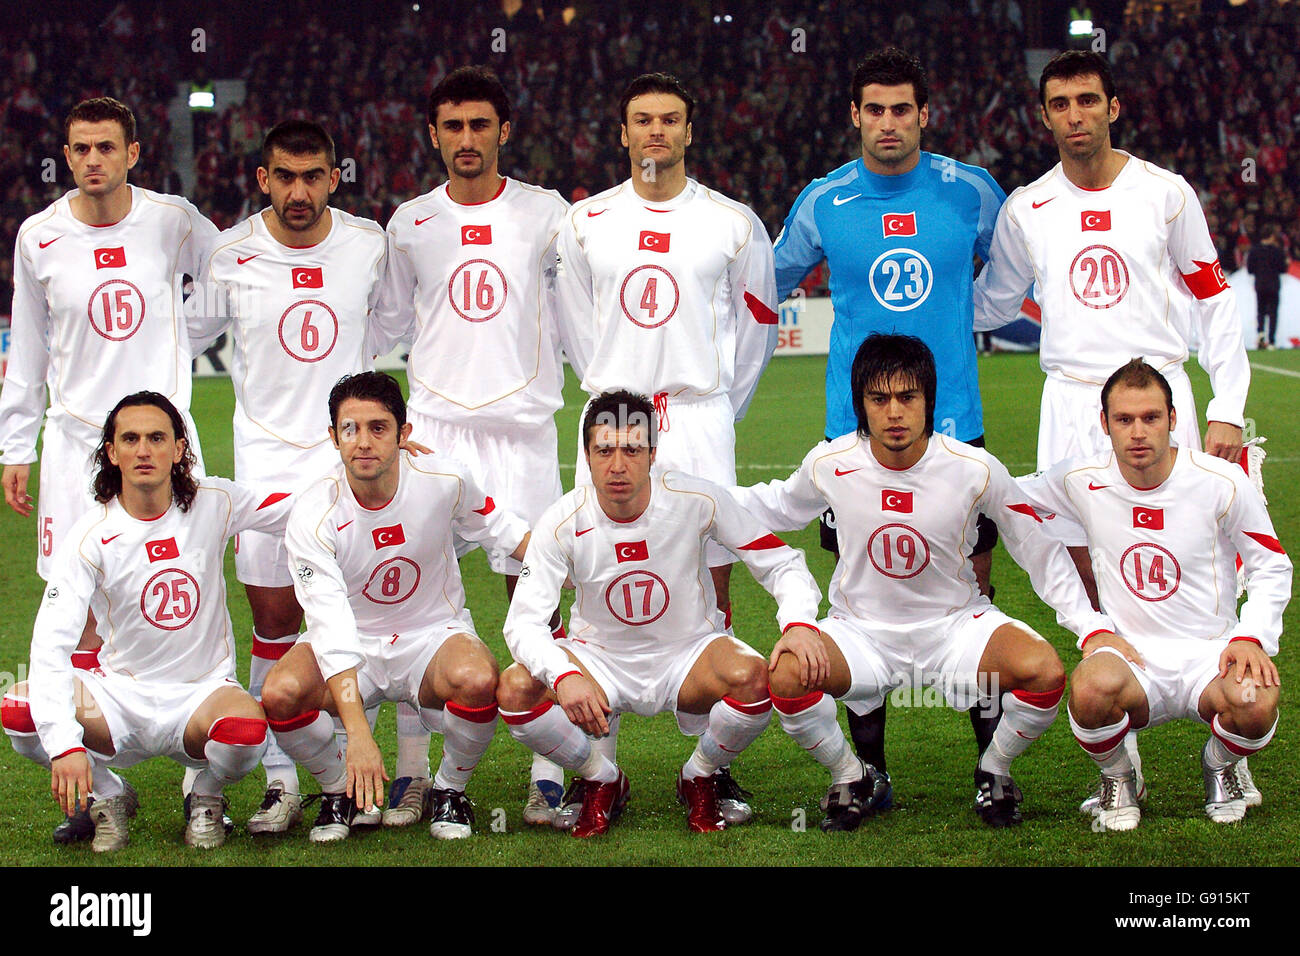 https://c8.alamy.com/comp/G915KT/soccer-world-cup-2006-qualifier-european-section-play-off-first-leg-G915KT.jpg